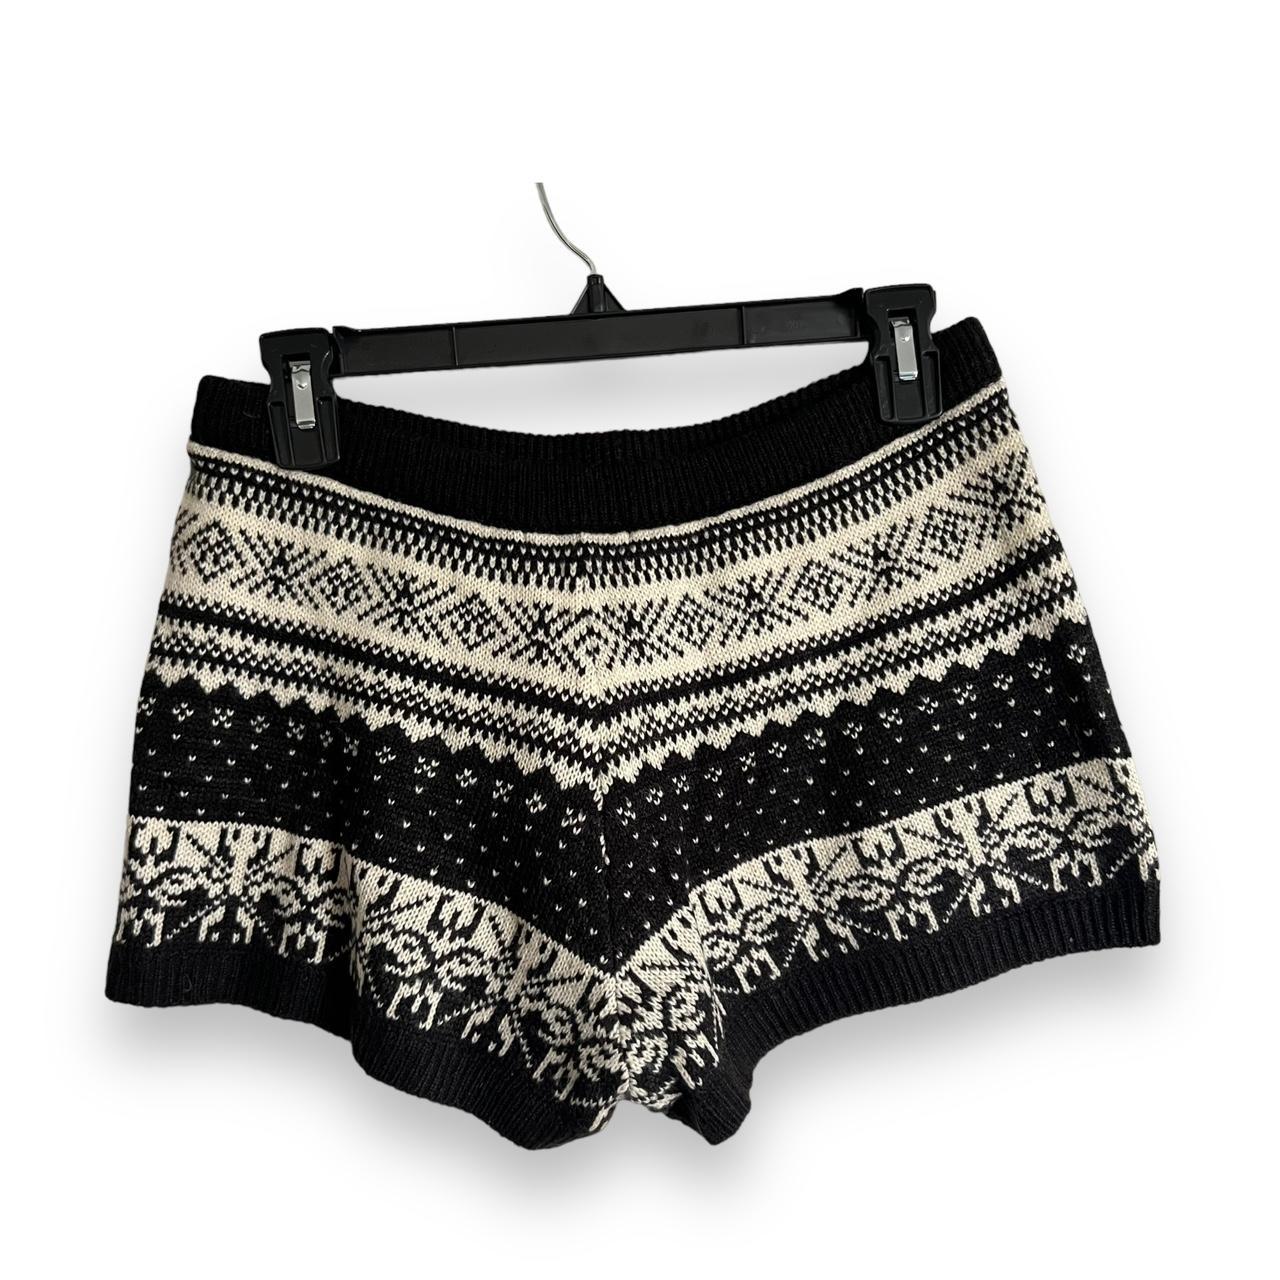 Black Shorts for Girls - Macy's